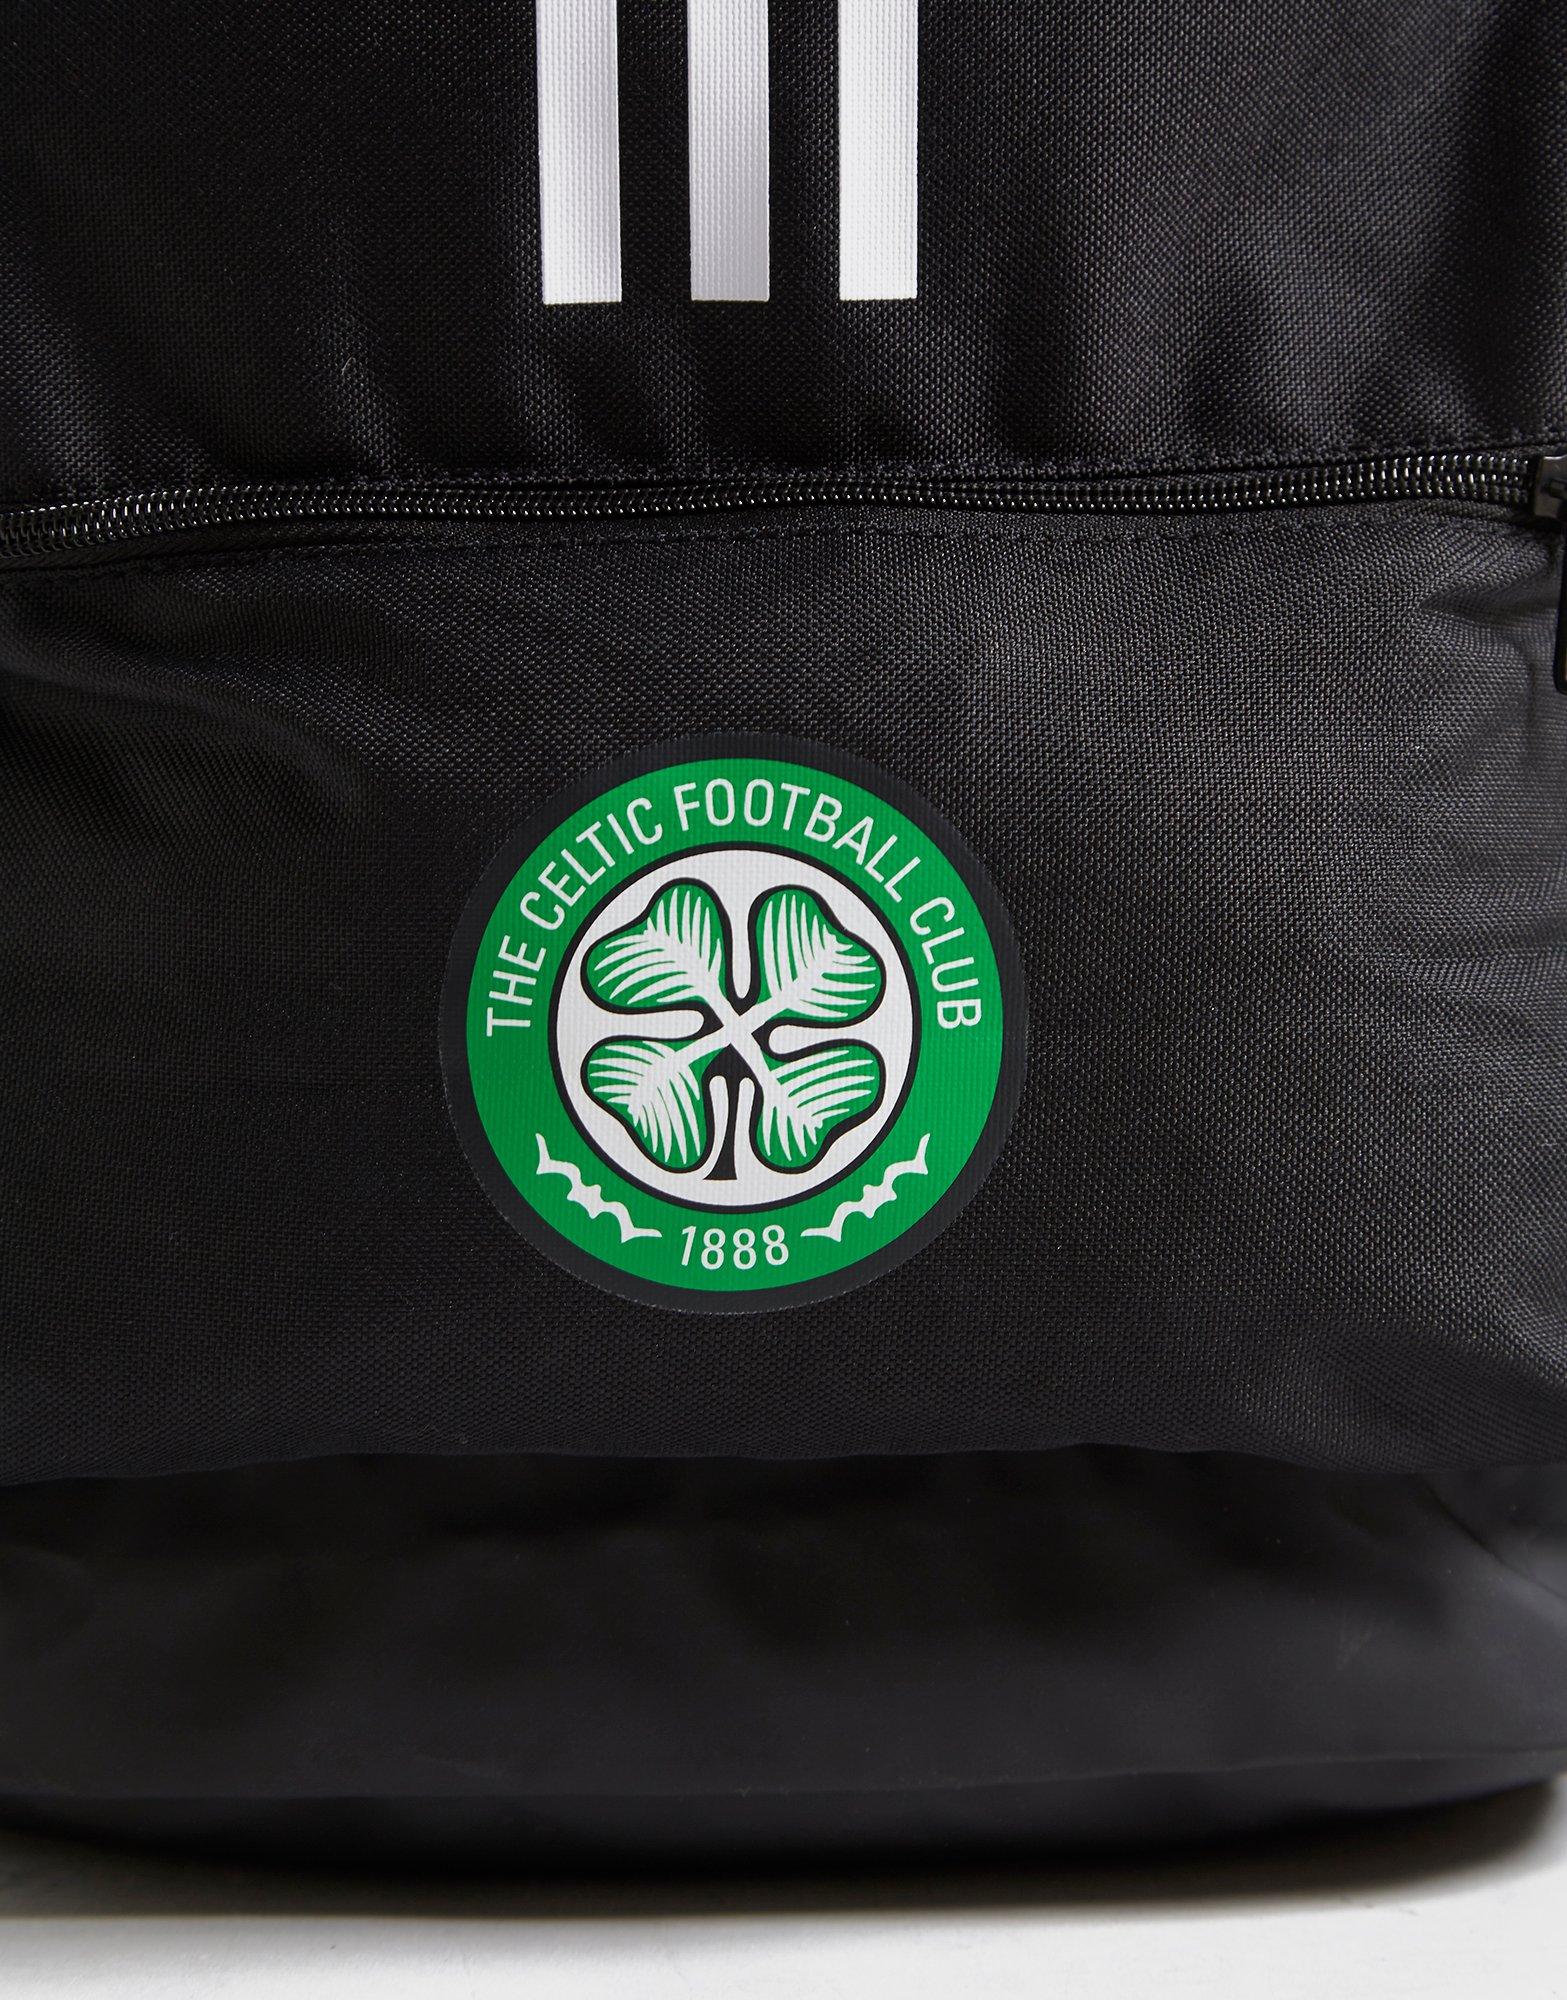 adidas celtics backpack